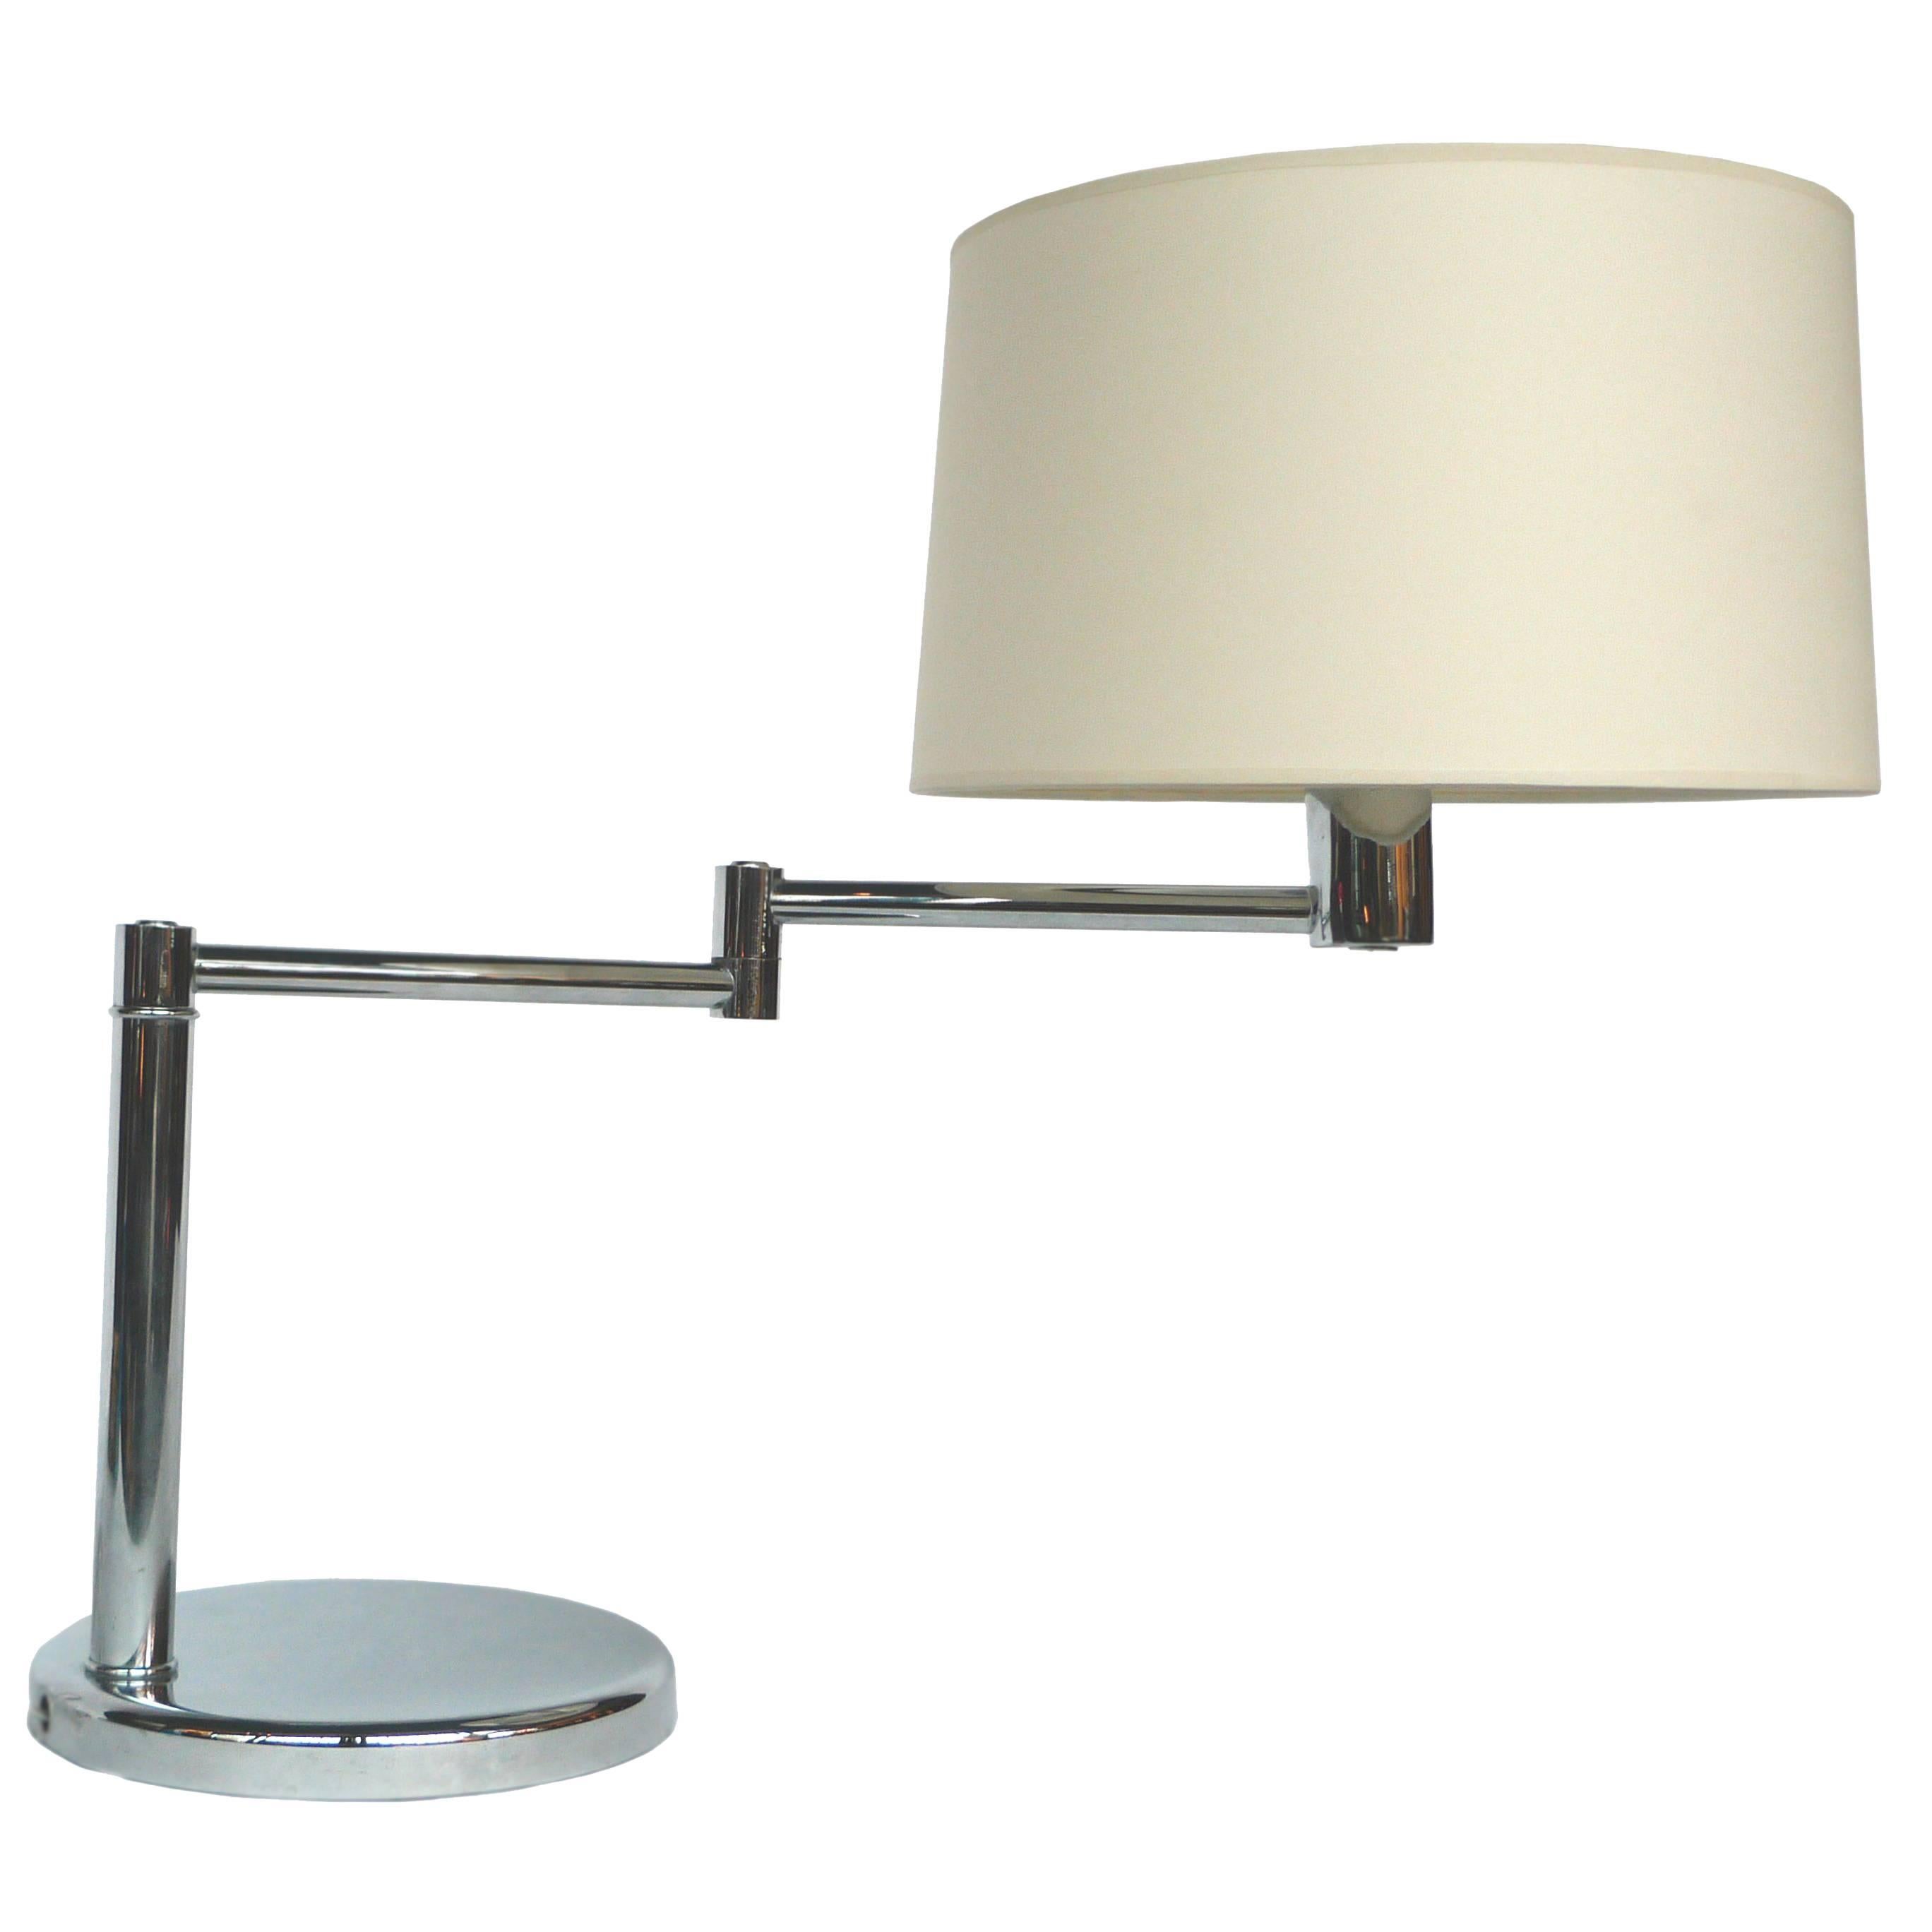 Midcentury Chrome Swing-Arm Desk Lamp by Walter Von Nessen